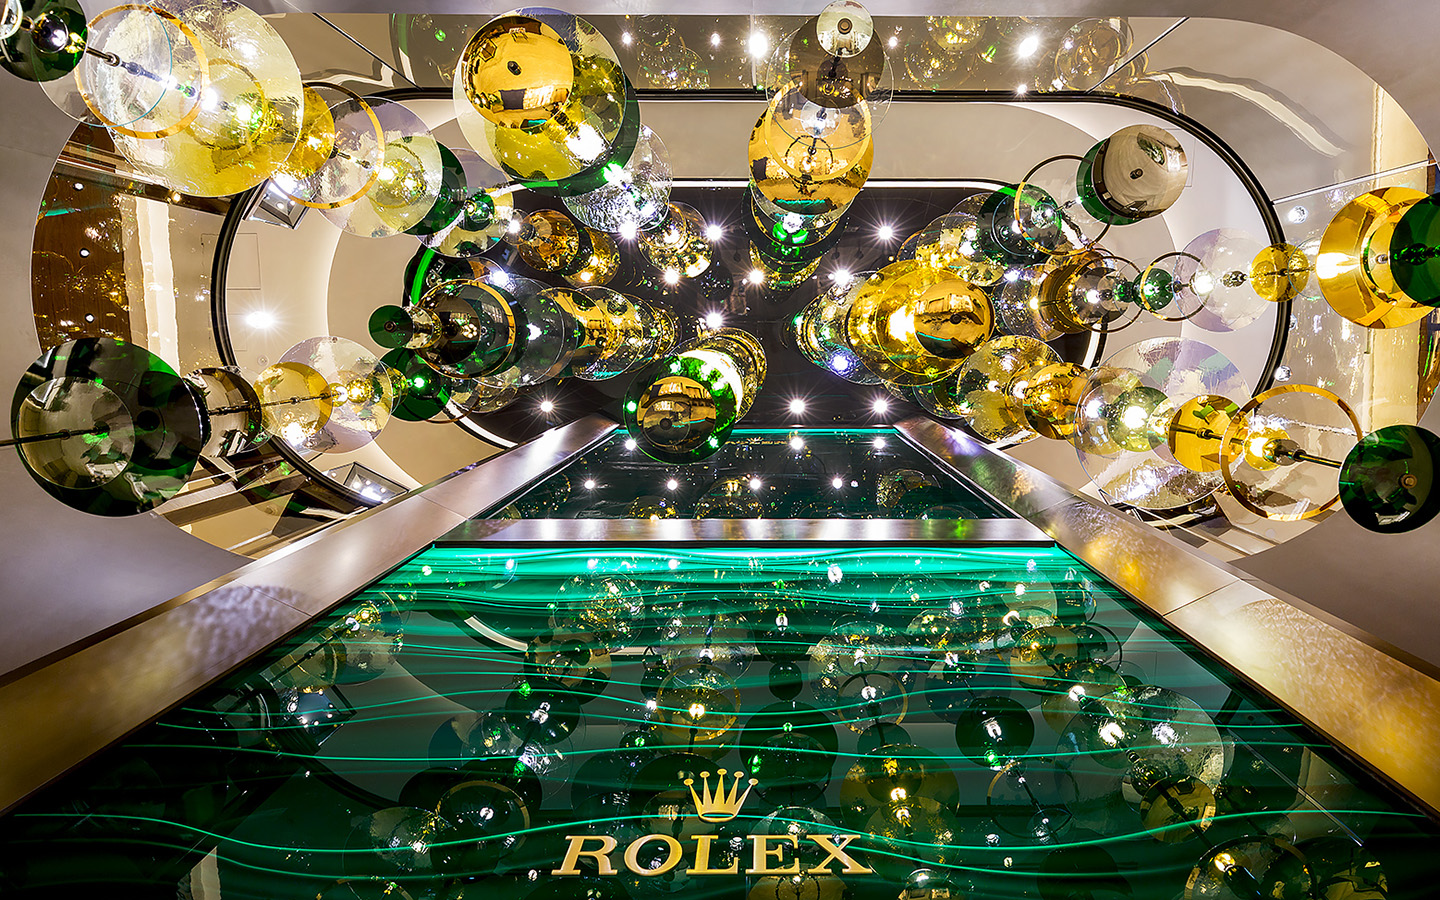 Rolex boutique interior